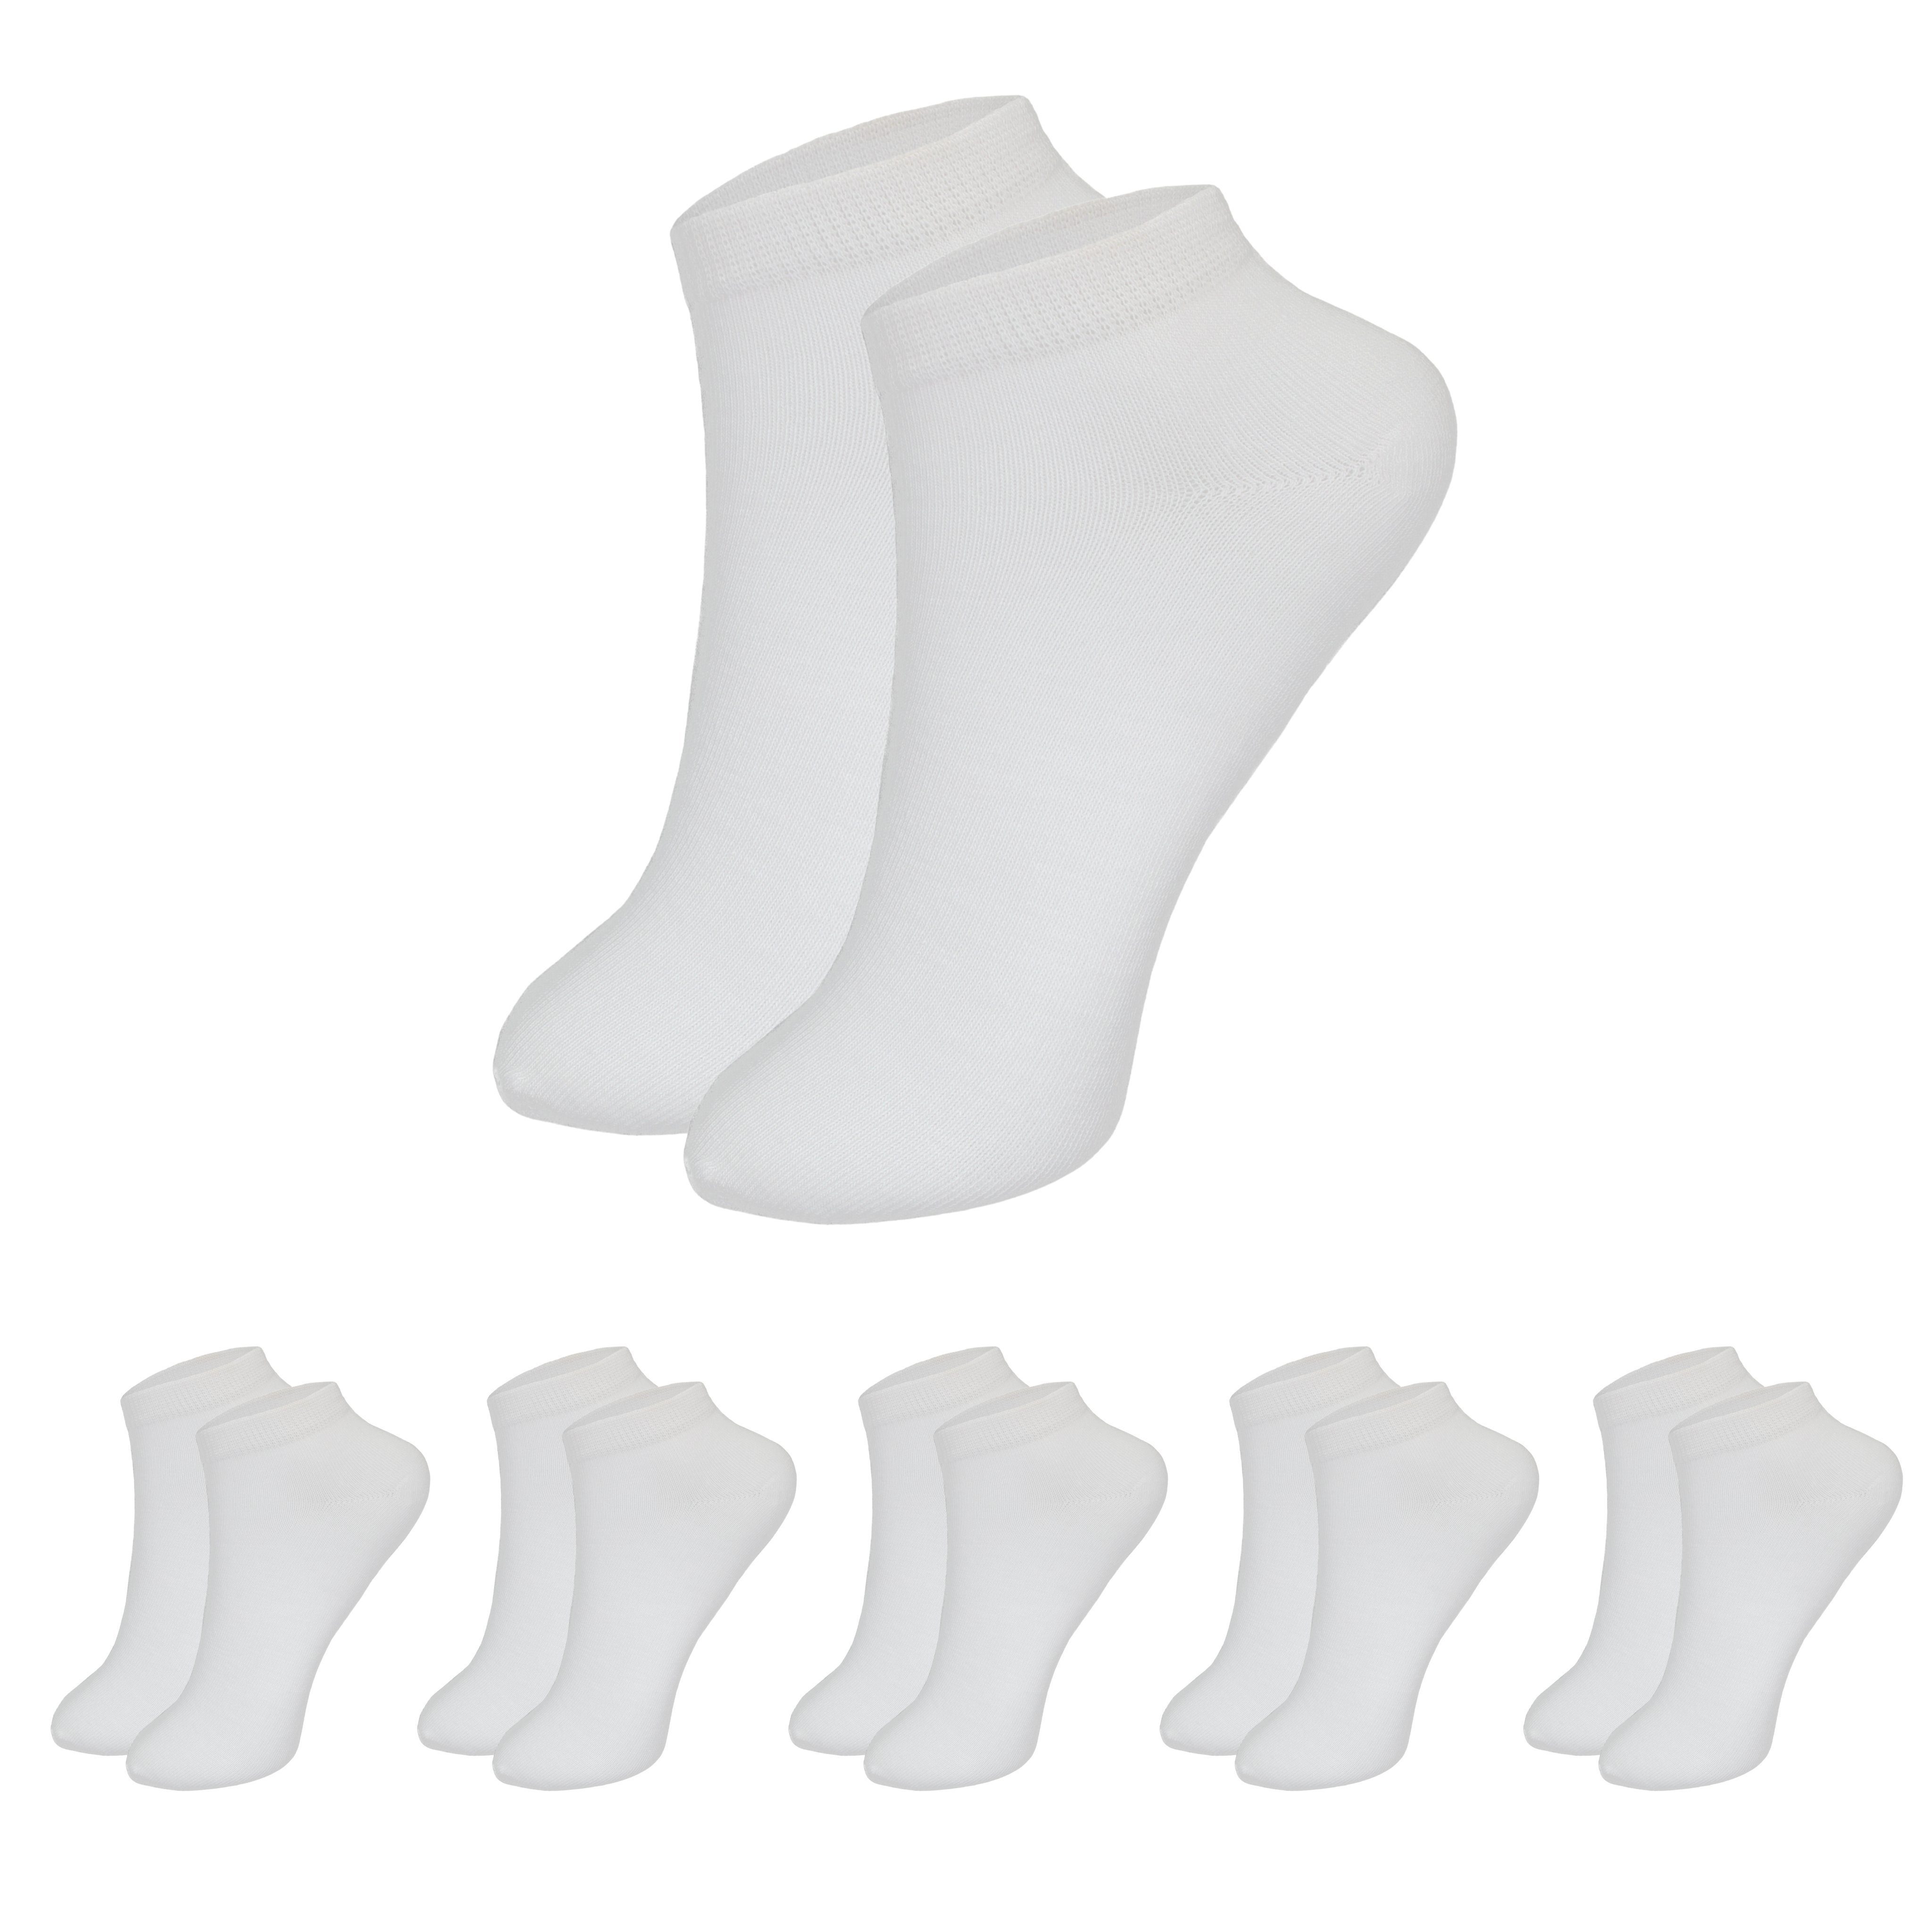 SO.I Freizeitsocken Sneaker Socken für Damen & Herren aus Baumwolle (Größen 35-46, 5-20 Paar) atmungsaktive Unisex Socken